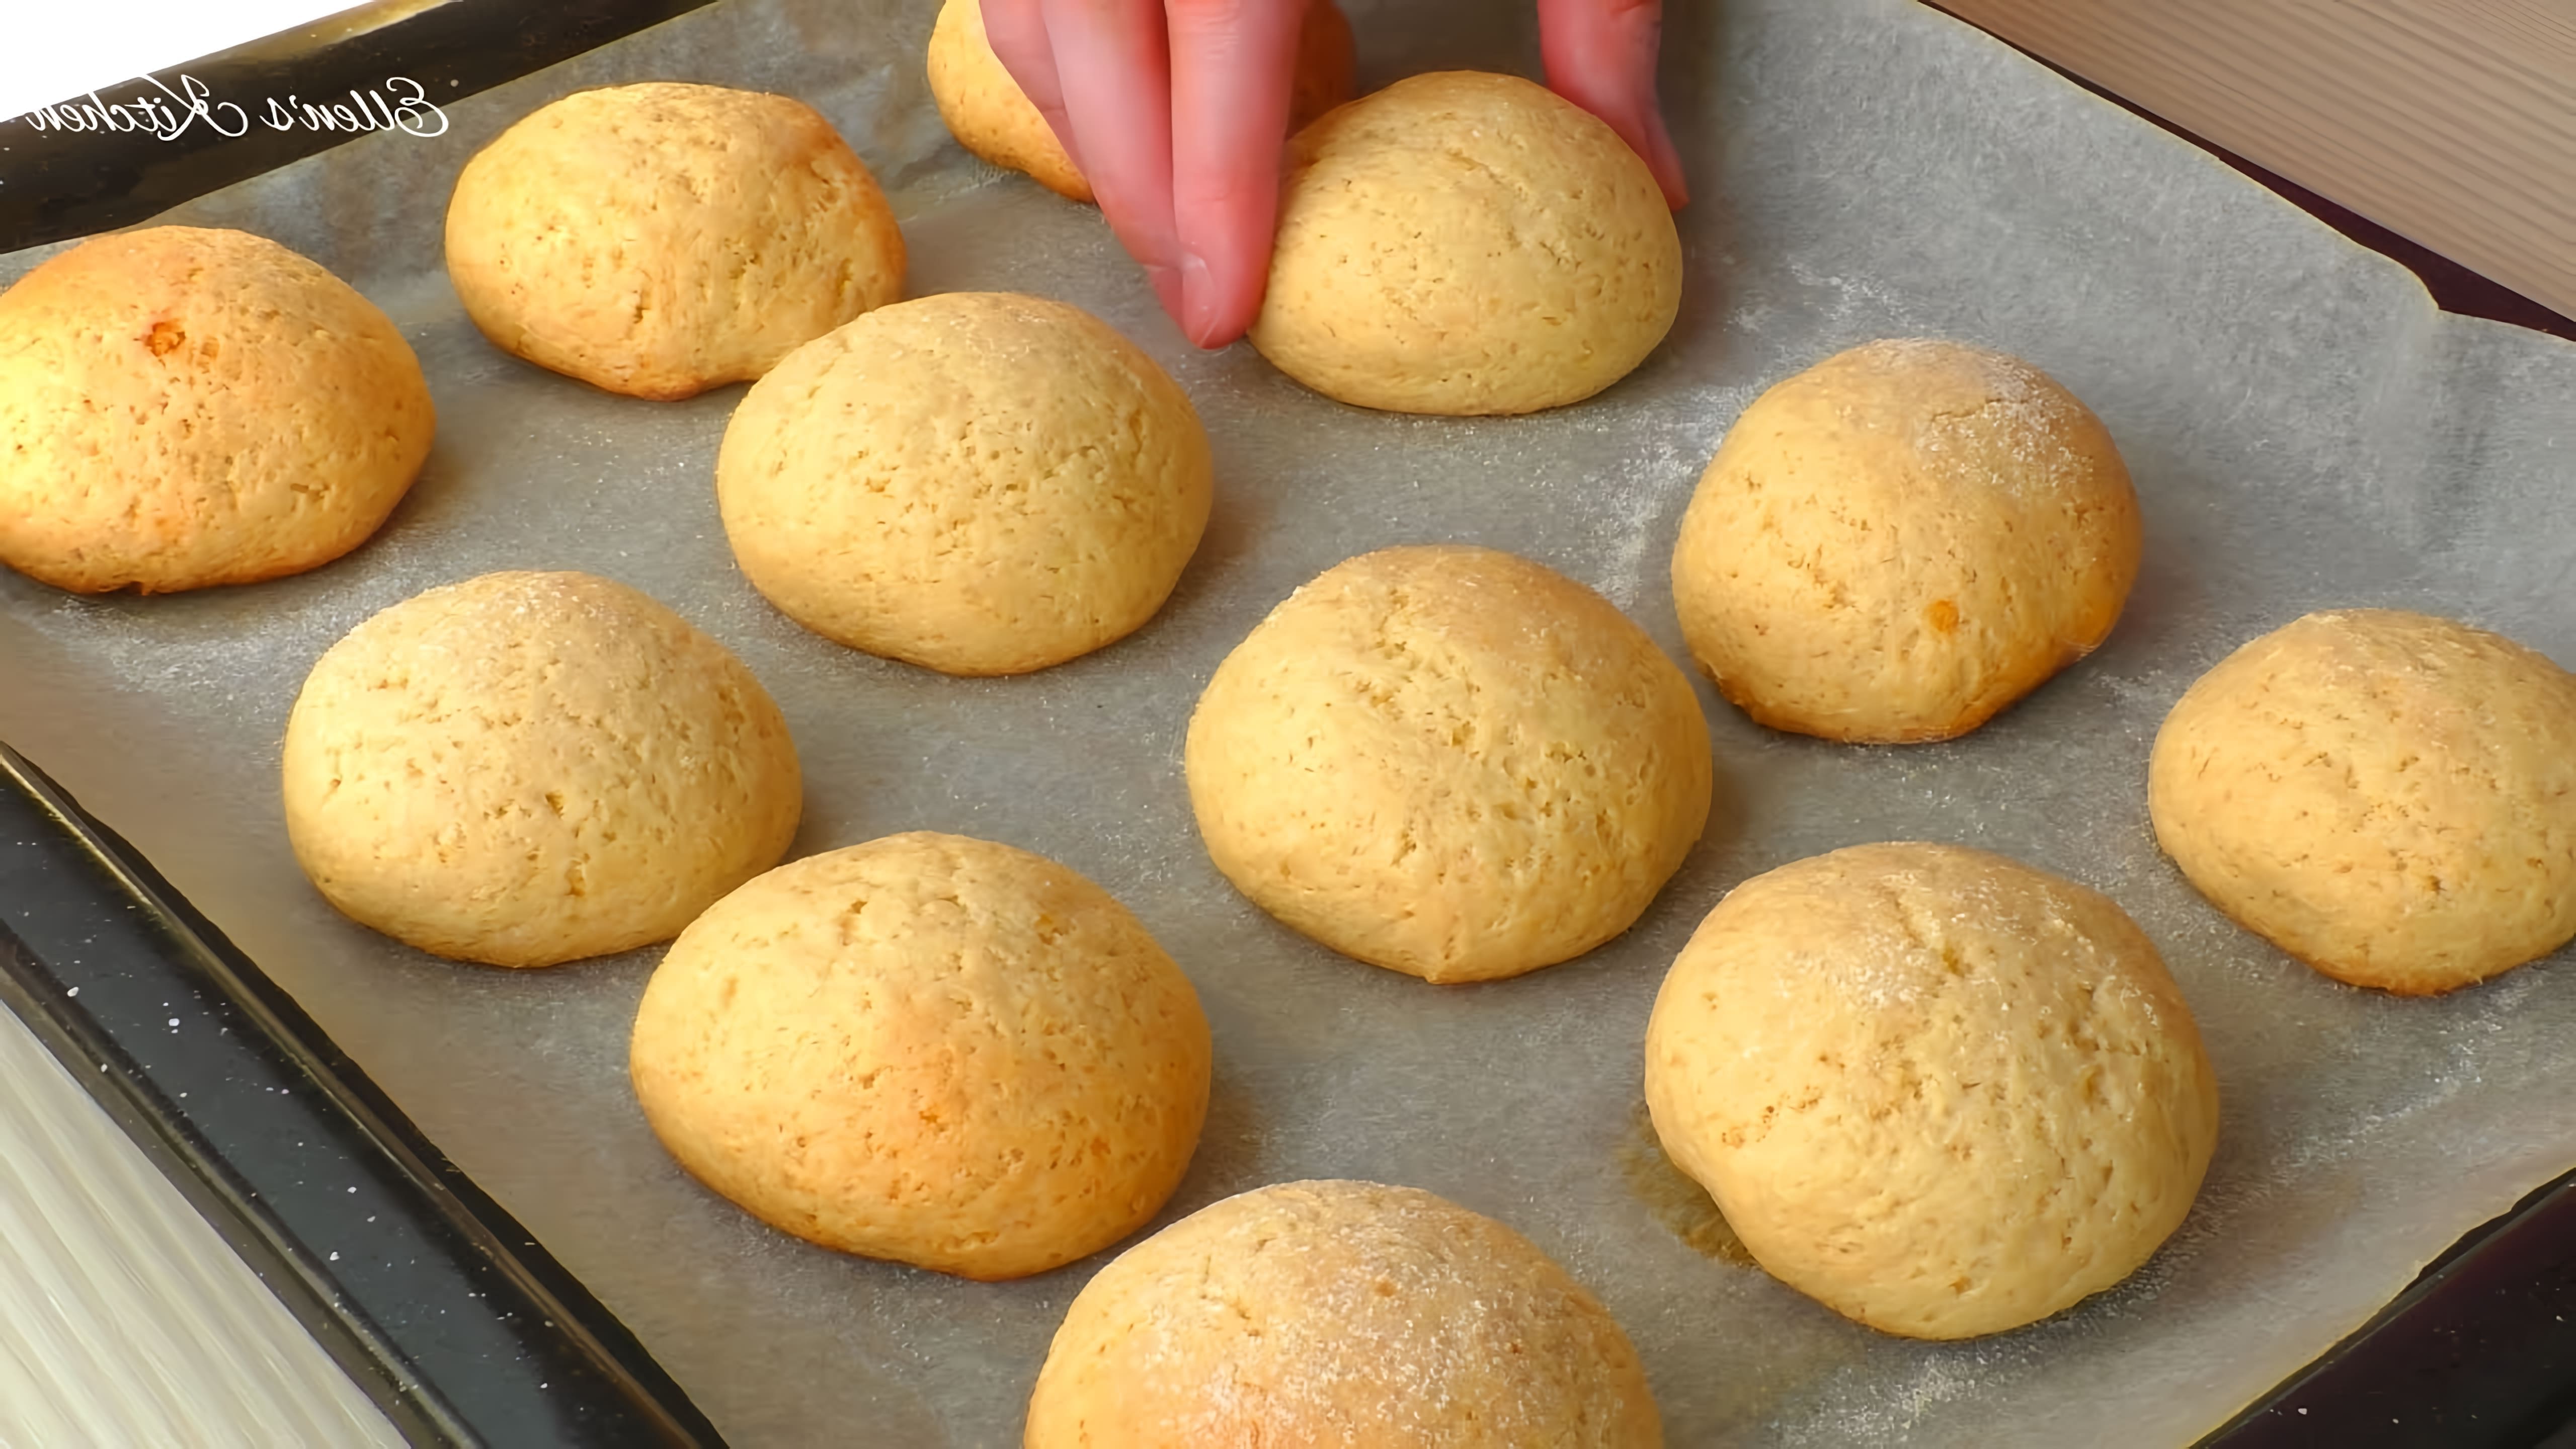 В этом видео демонстрируется рецепт приготовления печенья на сметане, который можно приготовить всего за 15 минут